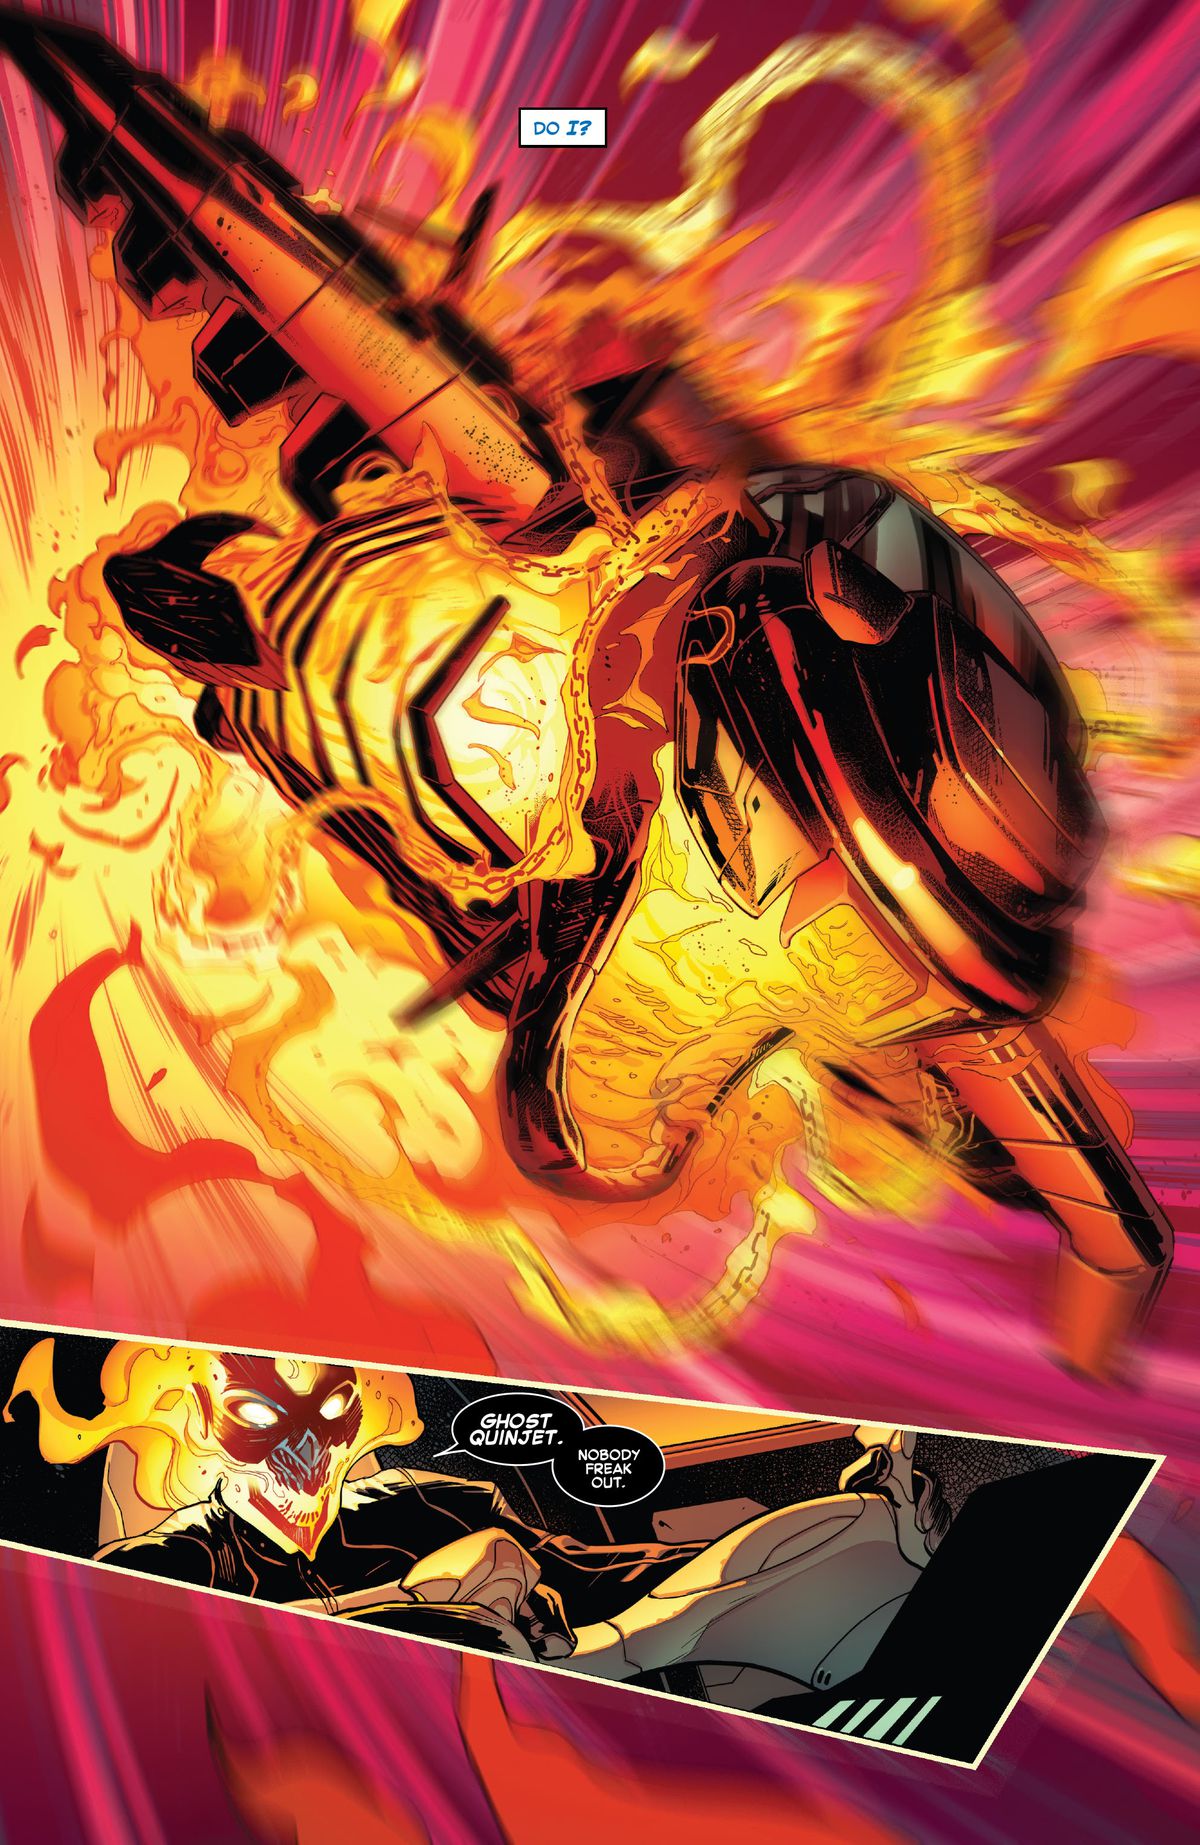 Un quinjet dei Vendicatori esplode in una fiamma demoniaca mentre Ghost Rider prende il timone. 